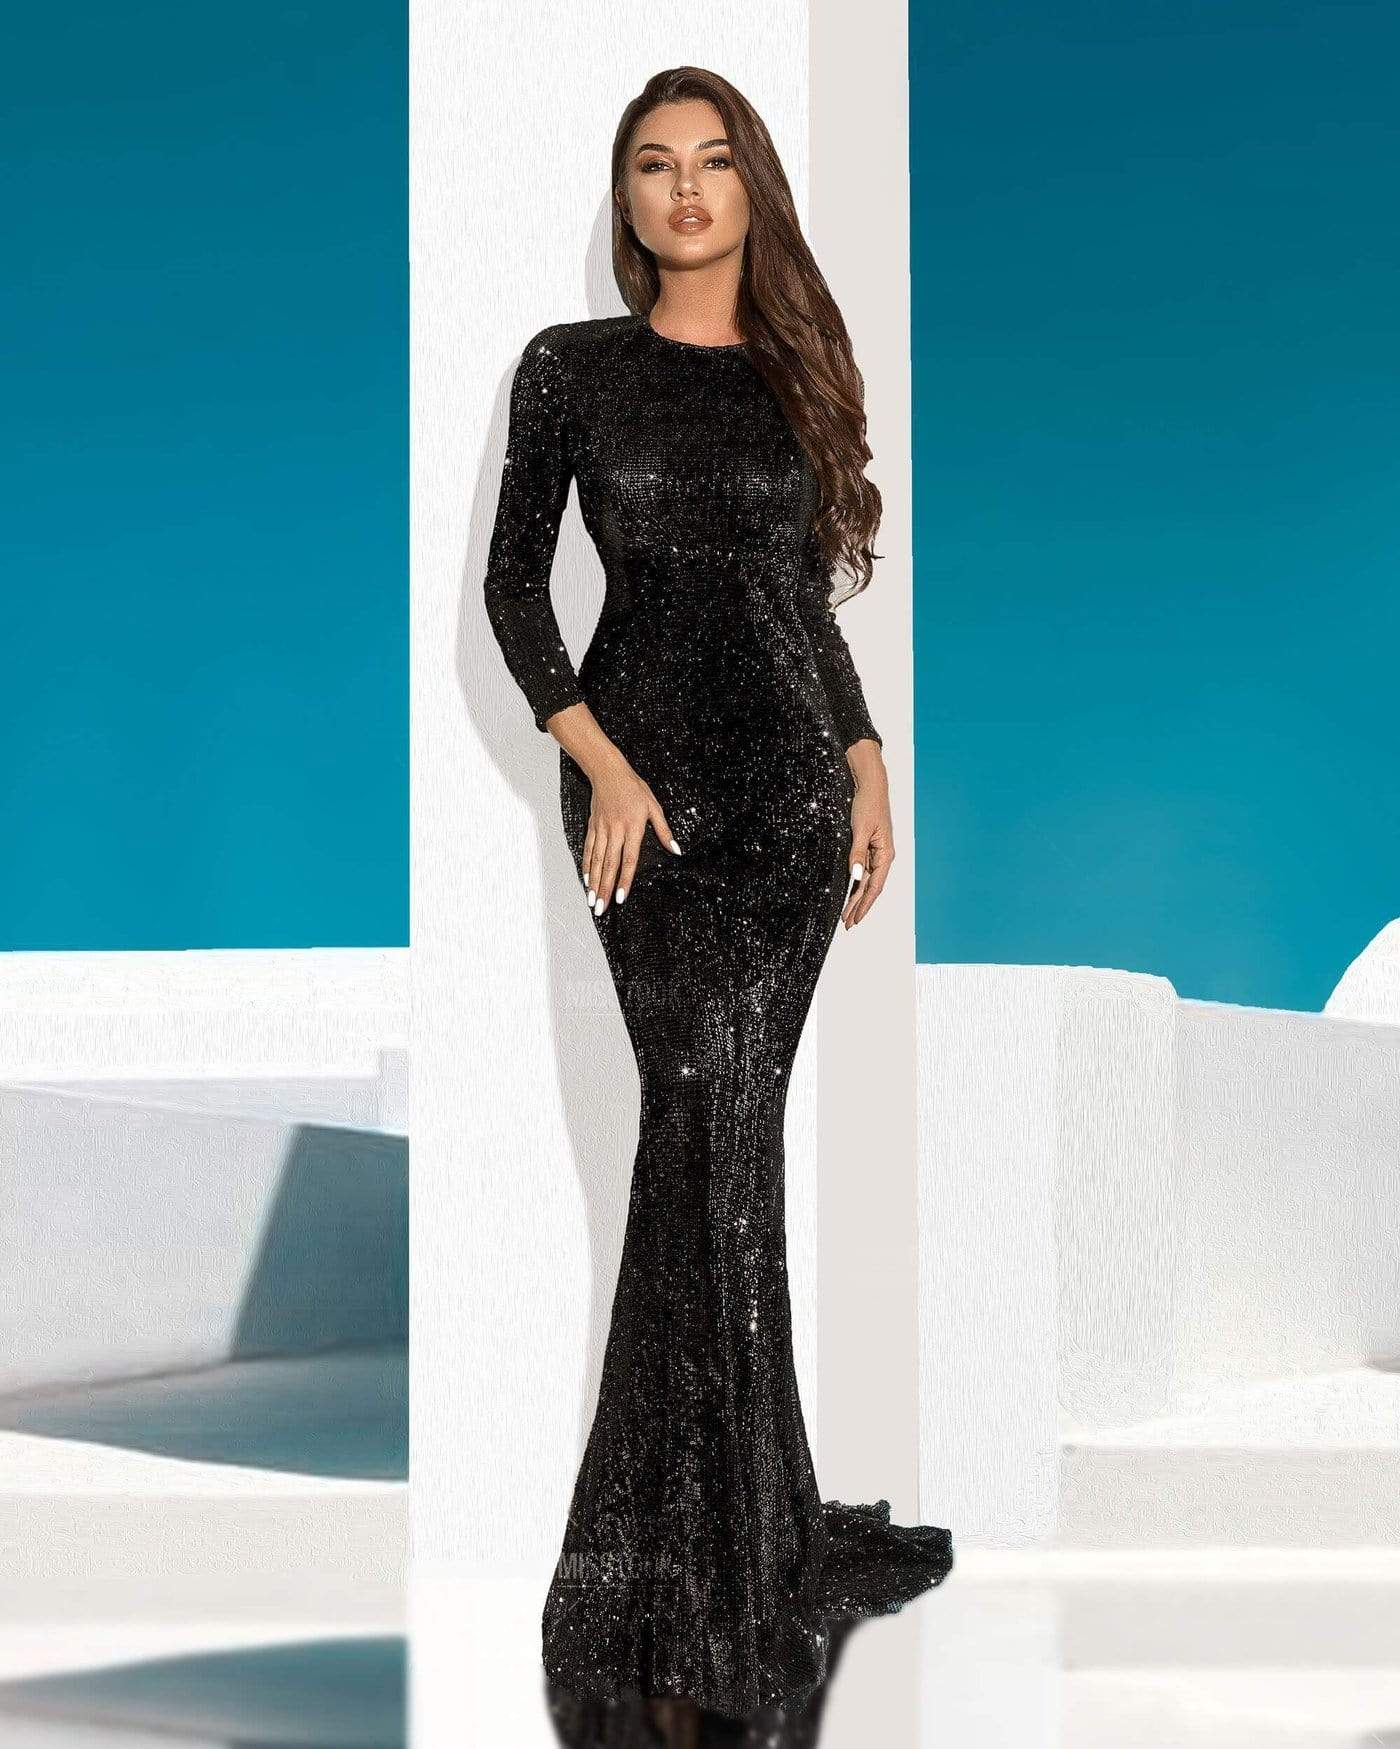 Elva Black Sequin Maxi Dress Dress